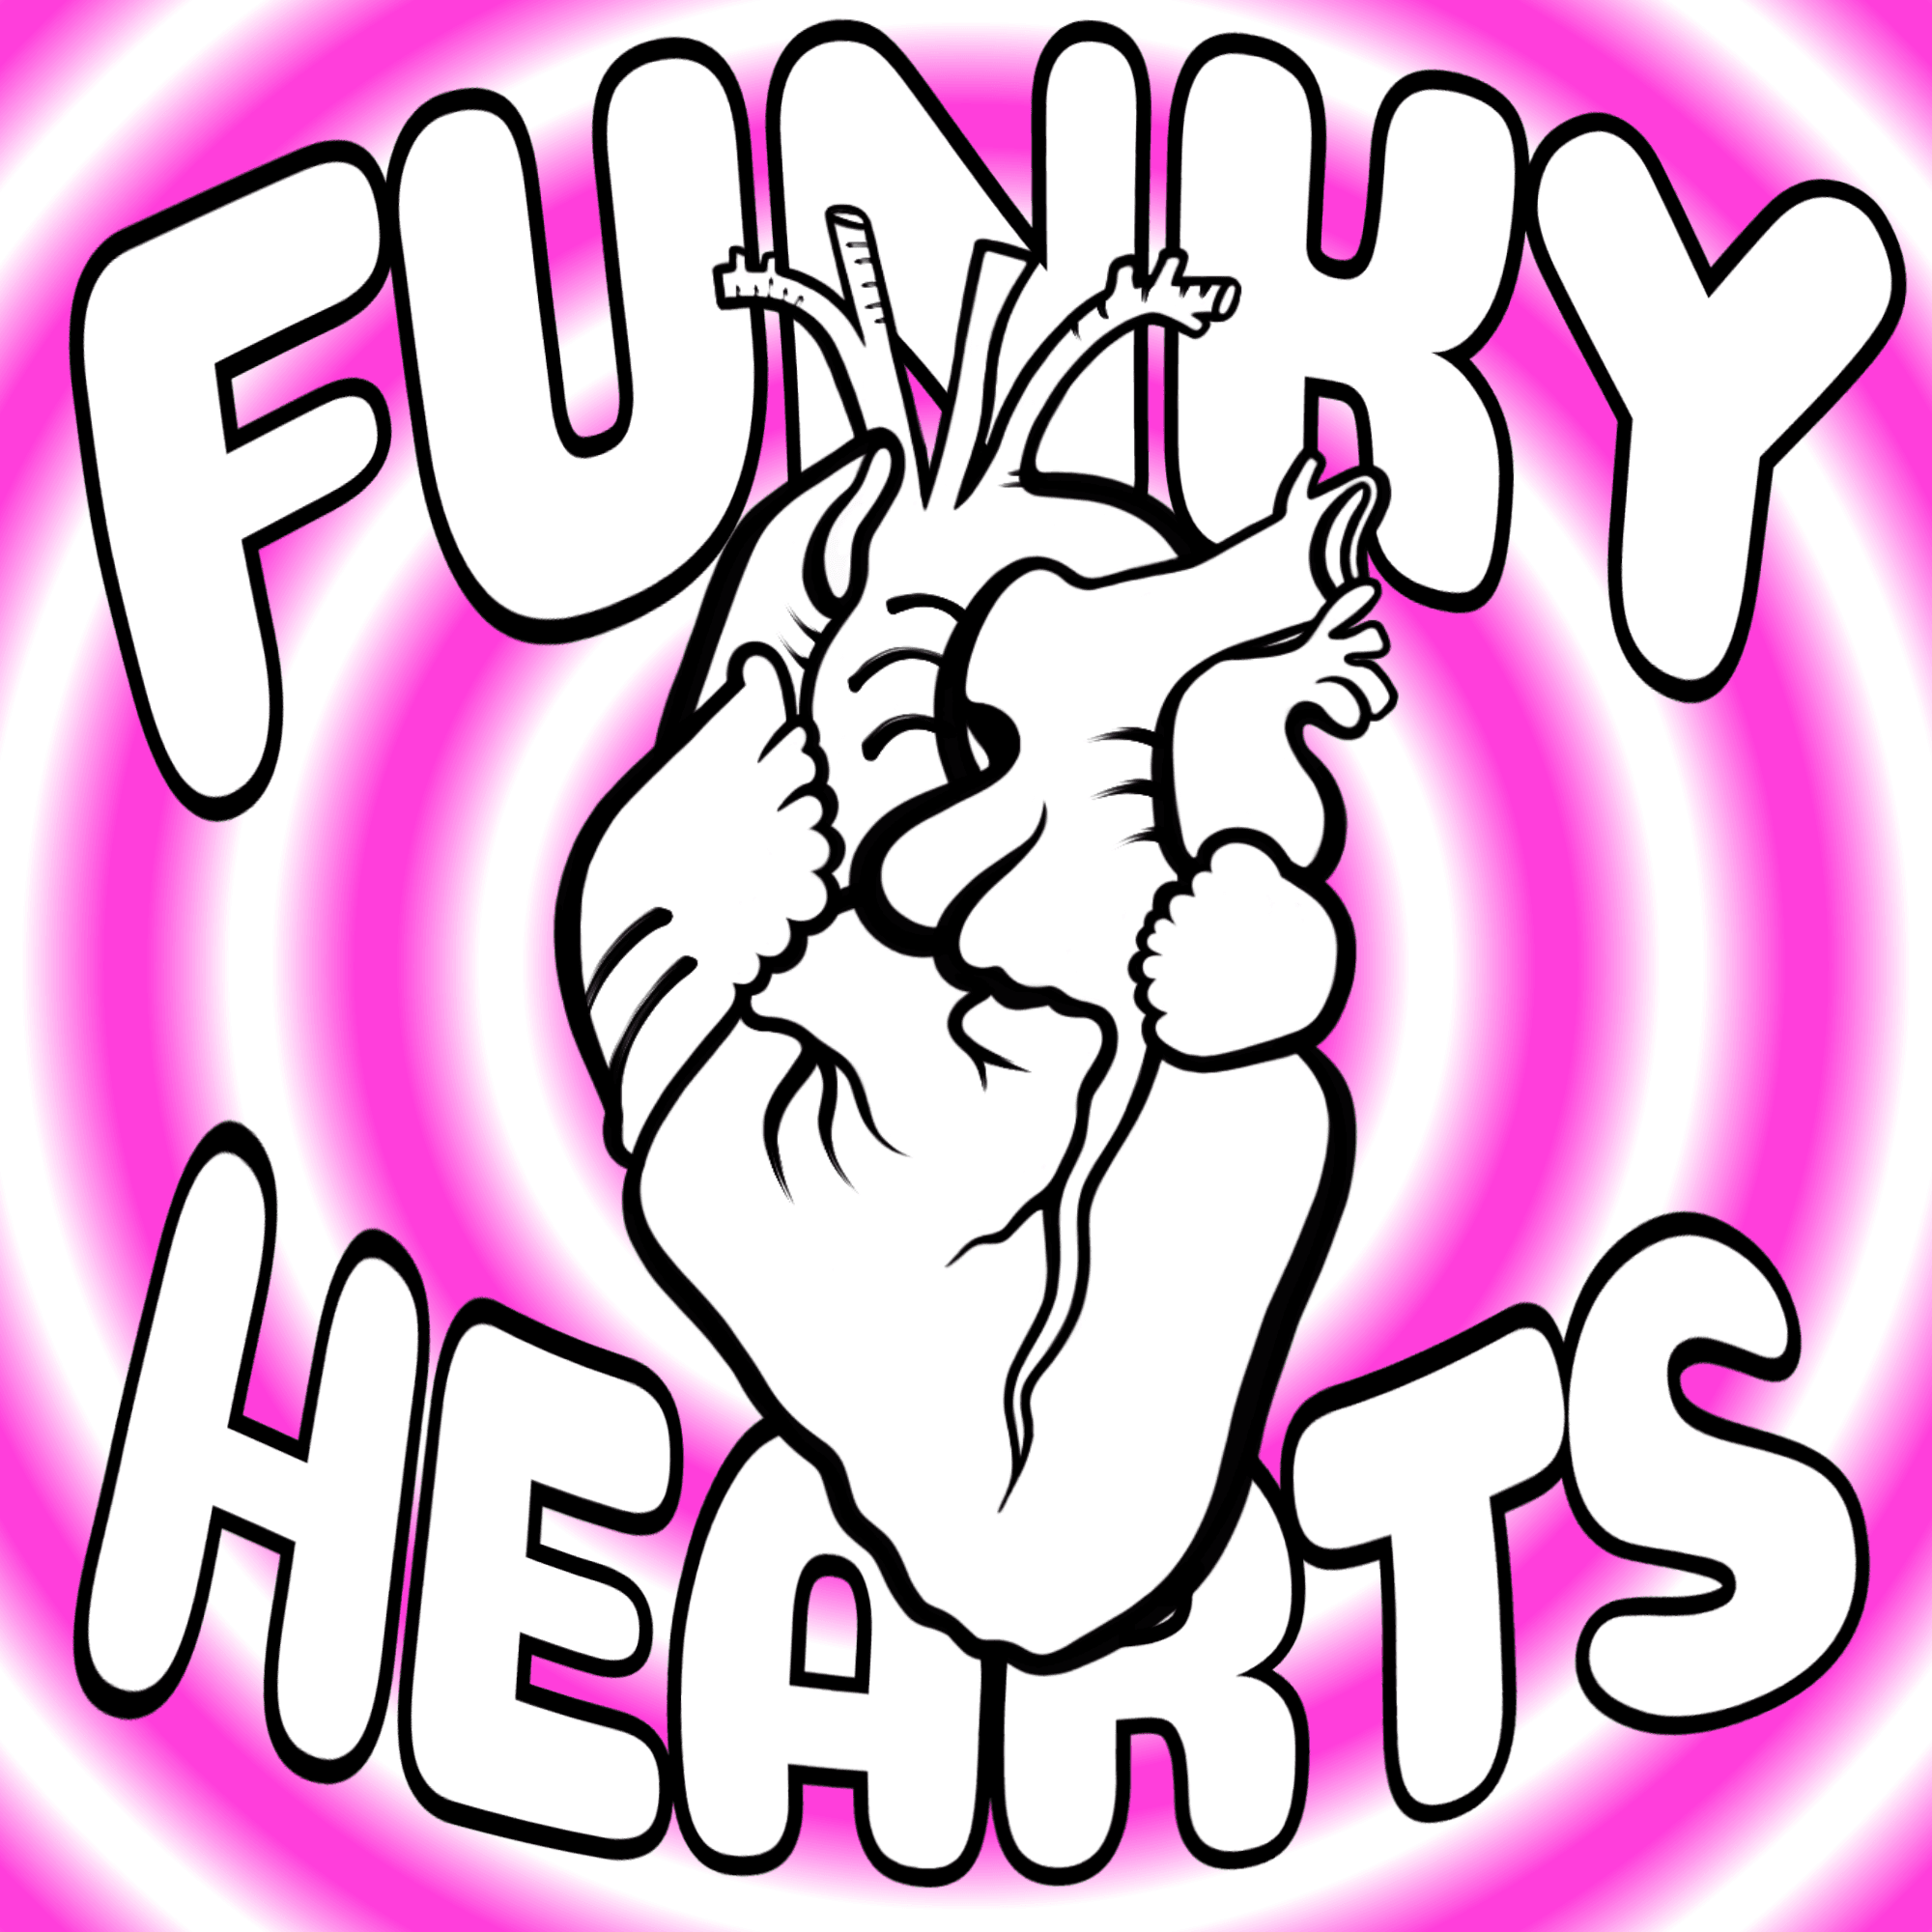 Funky Hearts